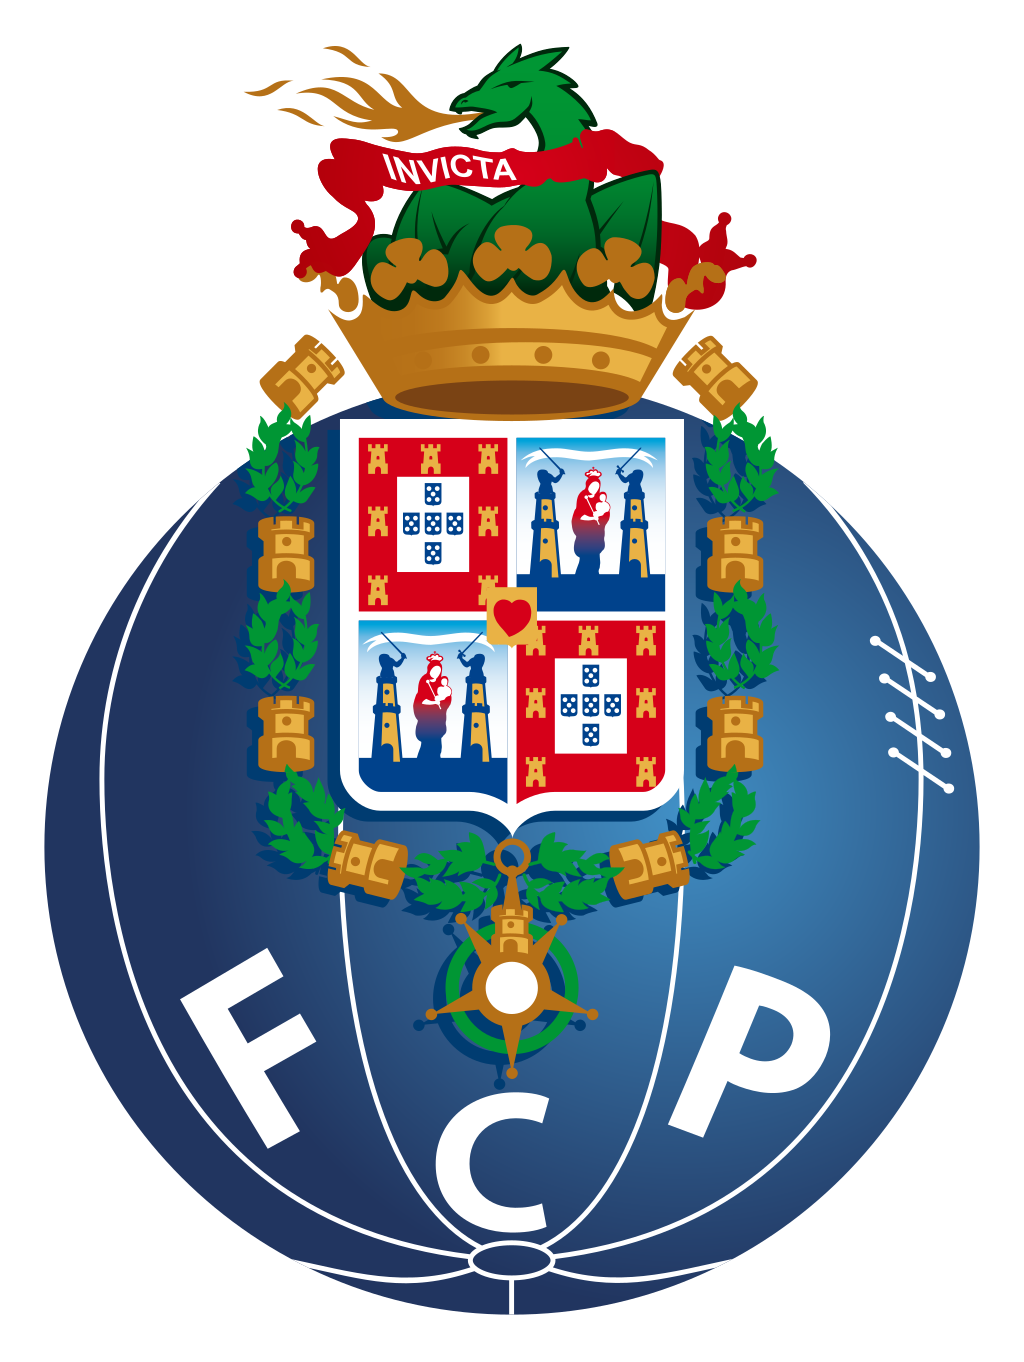 Bola de Prata (Portugal) - Wikipedia